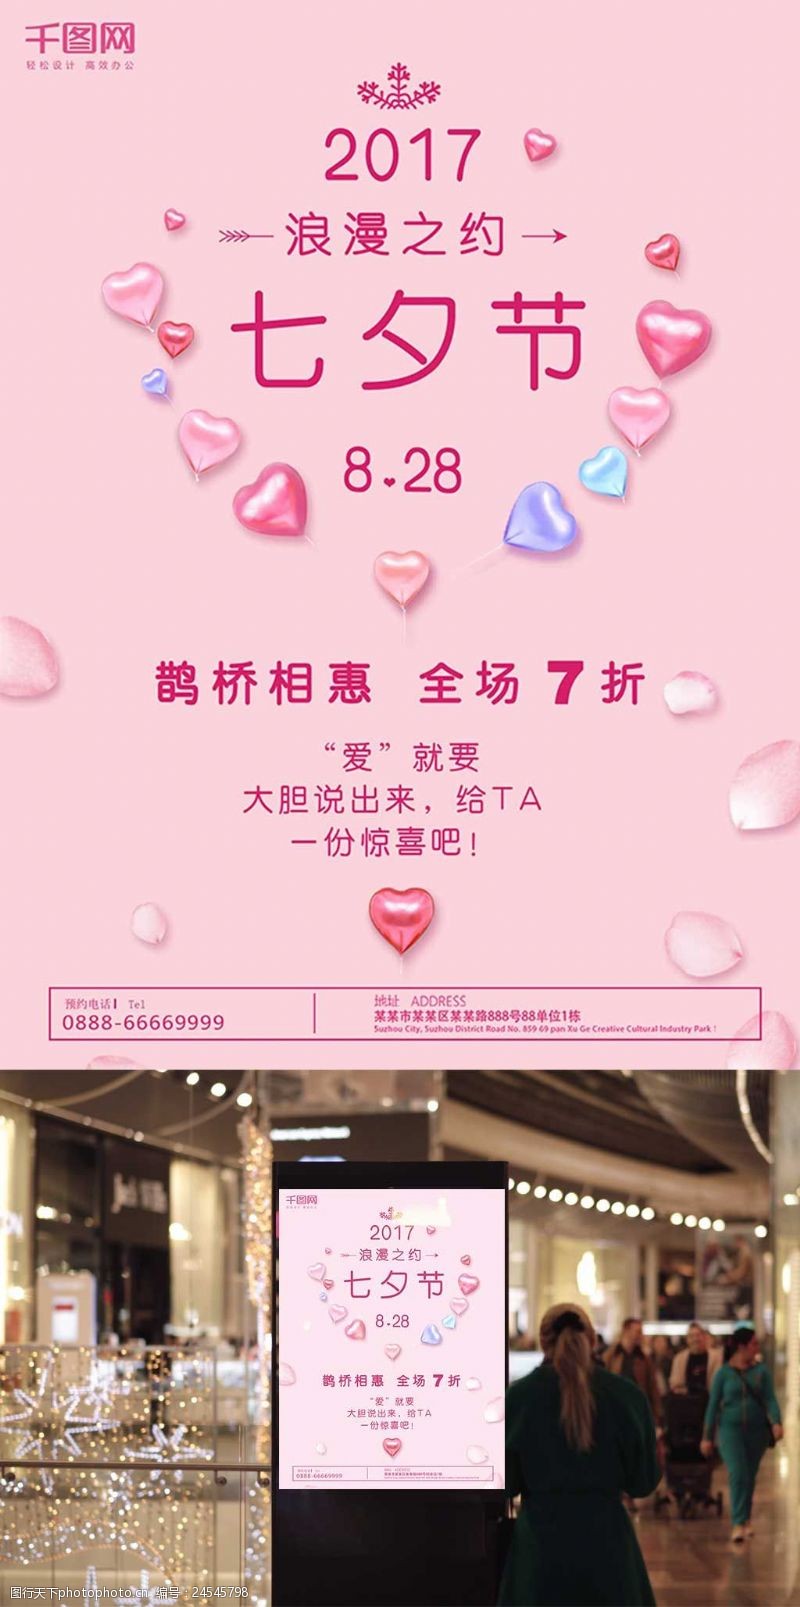 红色气球七夕情人节粉红气球创意简约商业海报设计